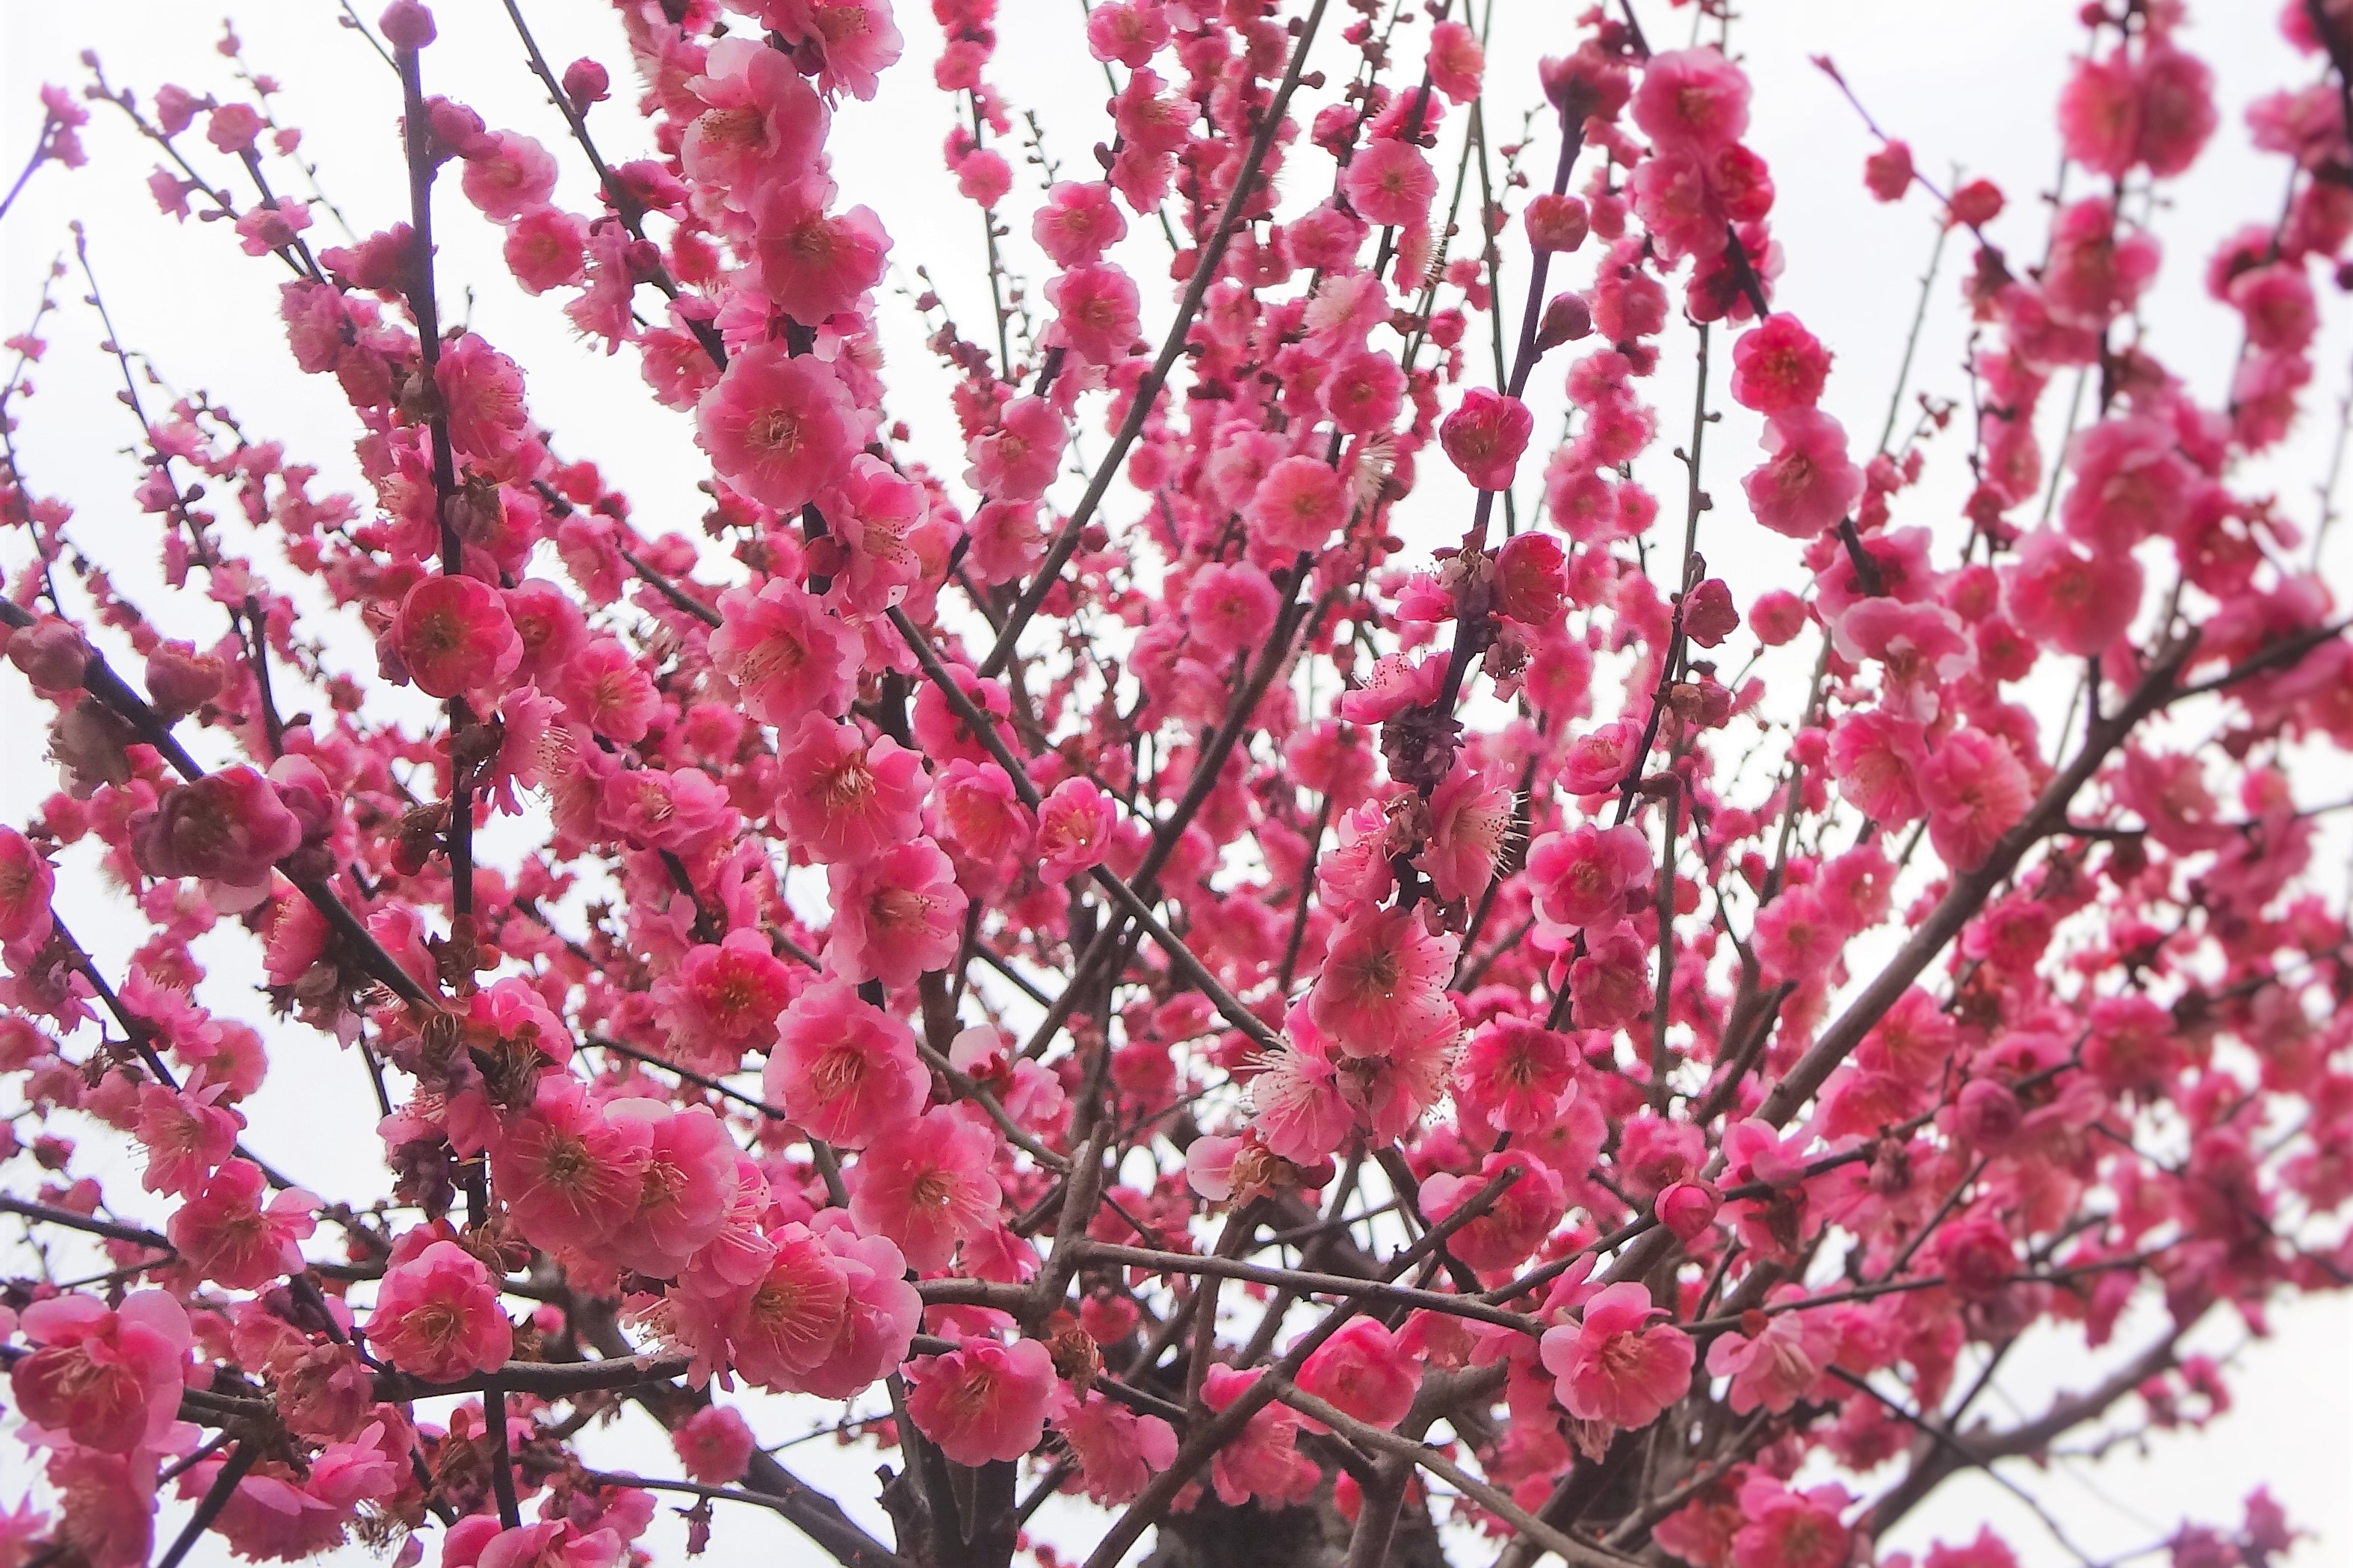 奈良あそび 梅の名所 奈良公園の 片岡梅林 で梅の花と鹿を見てきました 奈良 手染め革製品と革雑貨 えみいろ